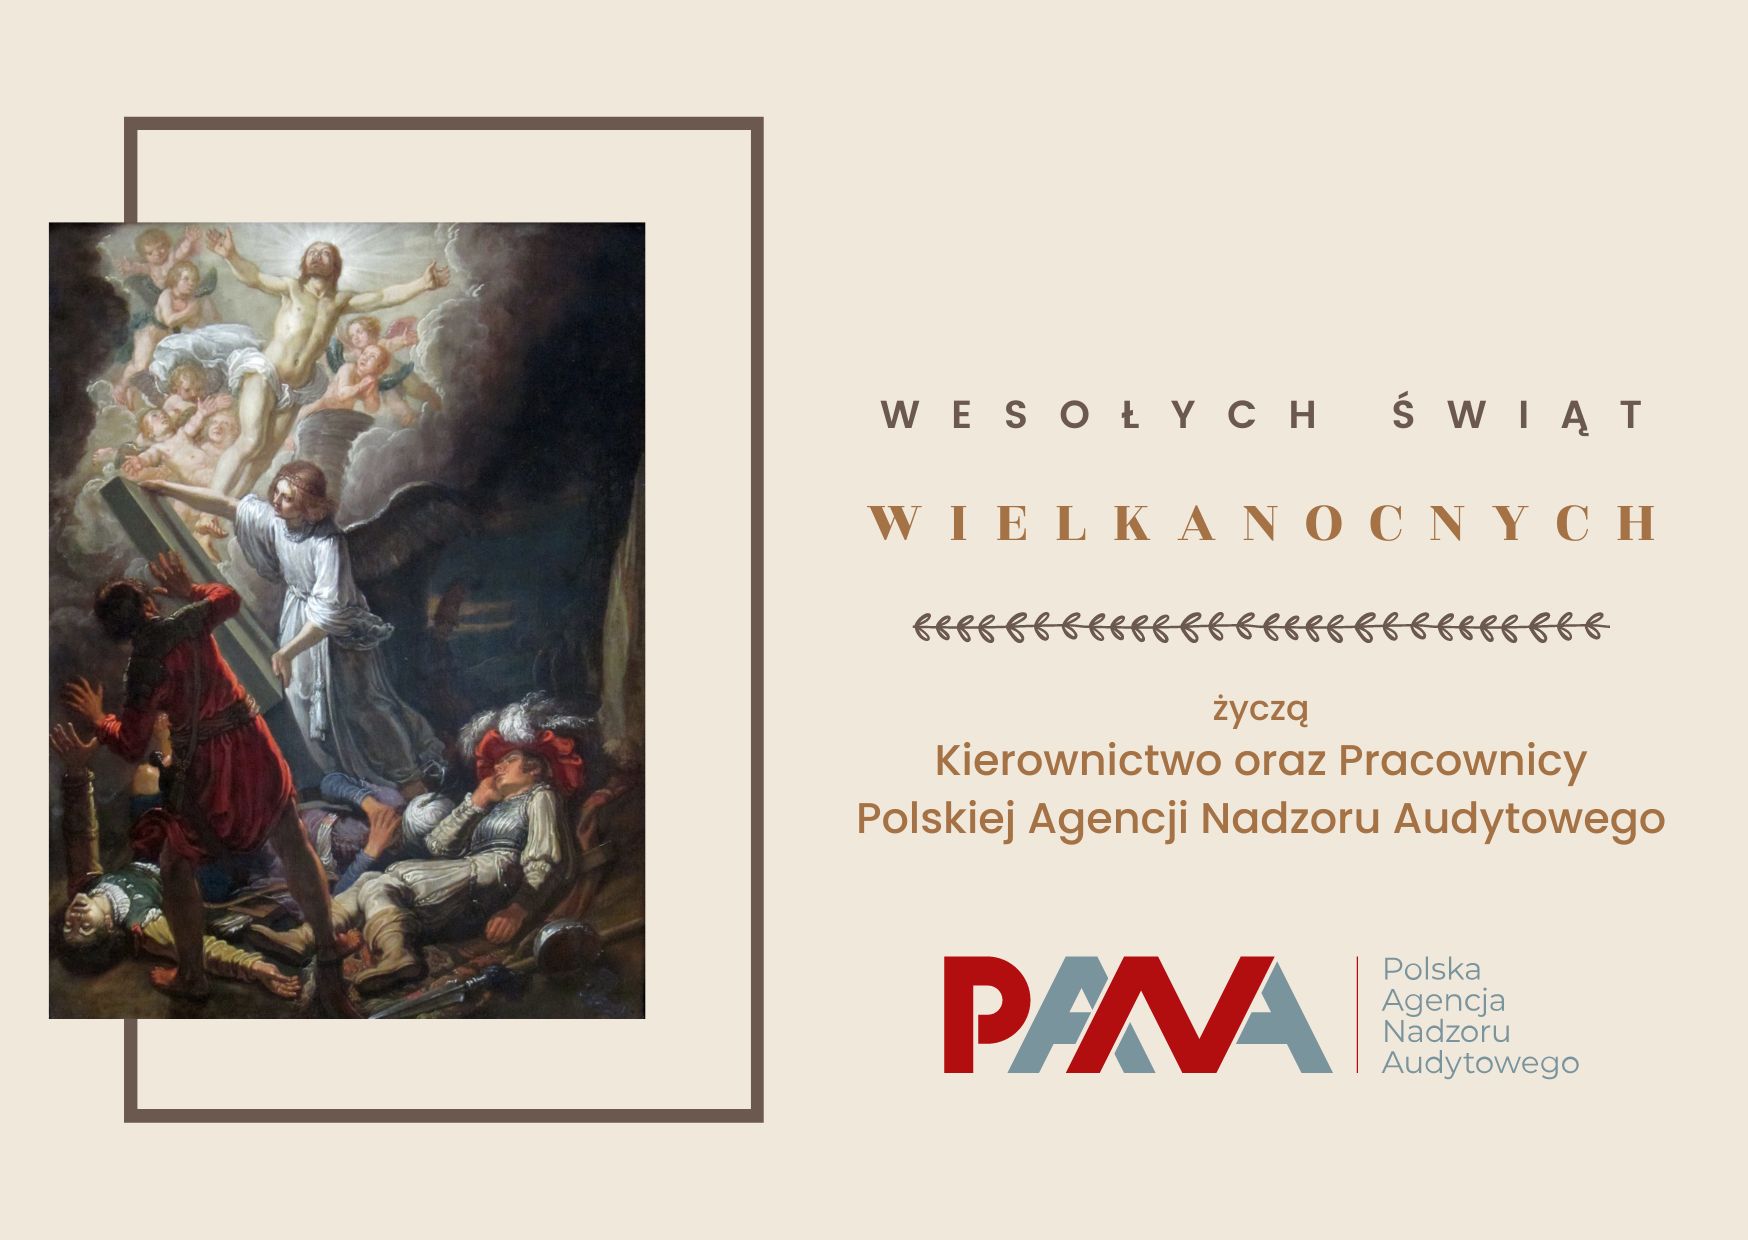 Wesołych Świąt Wielkanocnych życzą Kierownictwo i Pracownicy Polskiej Agencji Nadzoru Audytowego